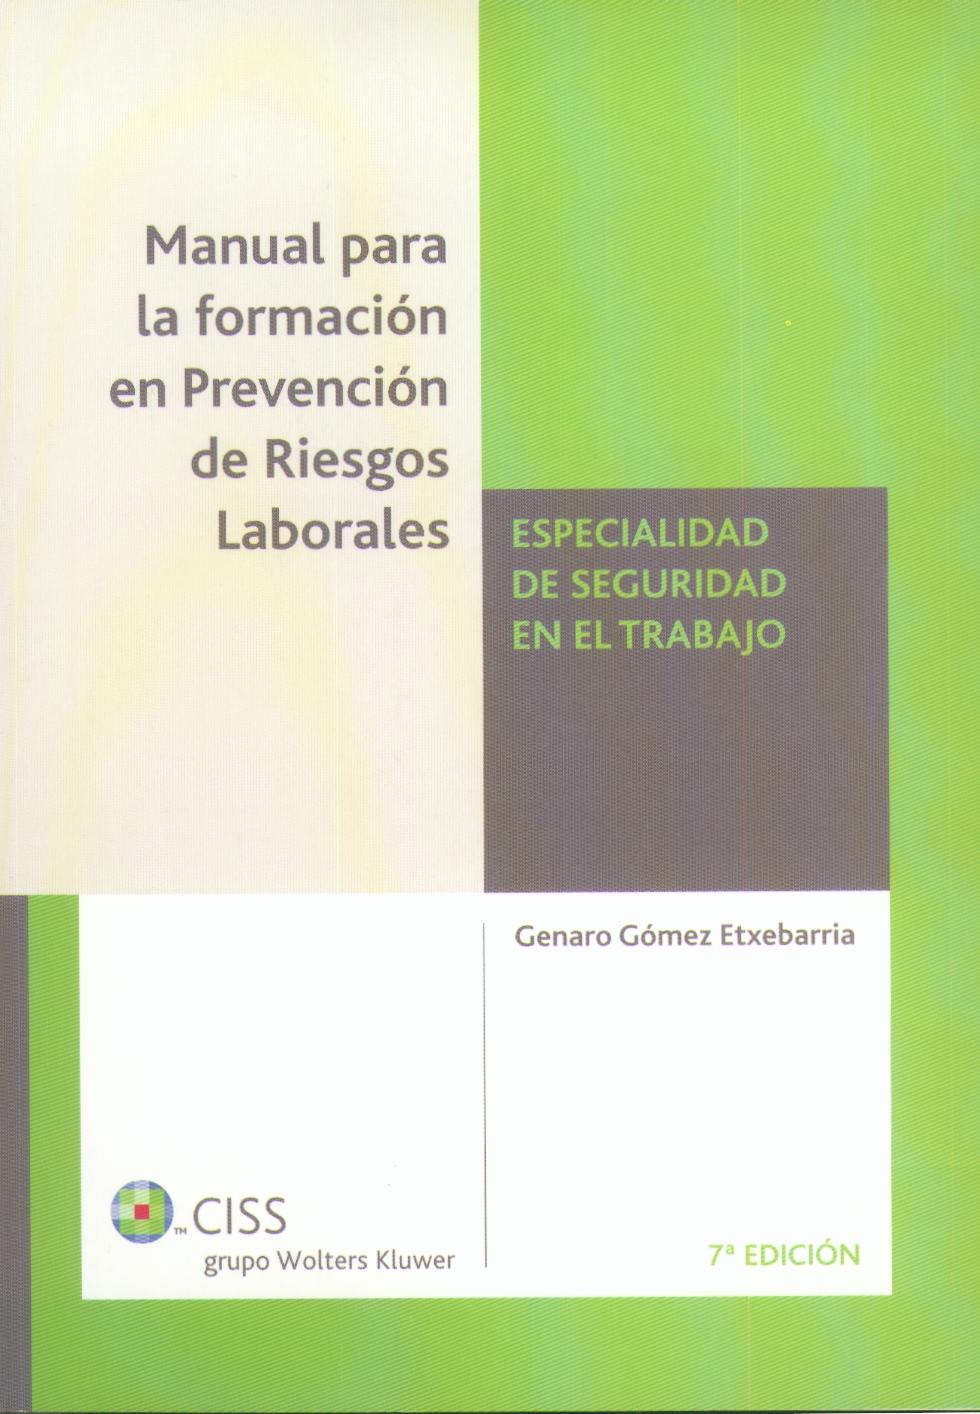 Manual para la Formacion en Prevencion de Riesgos Laborales. Seguridad en el Trabajo